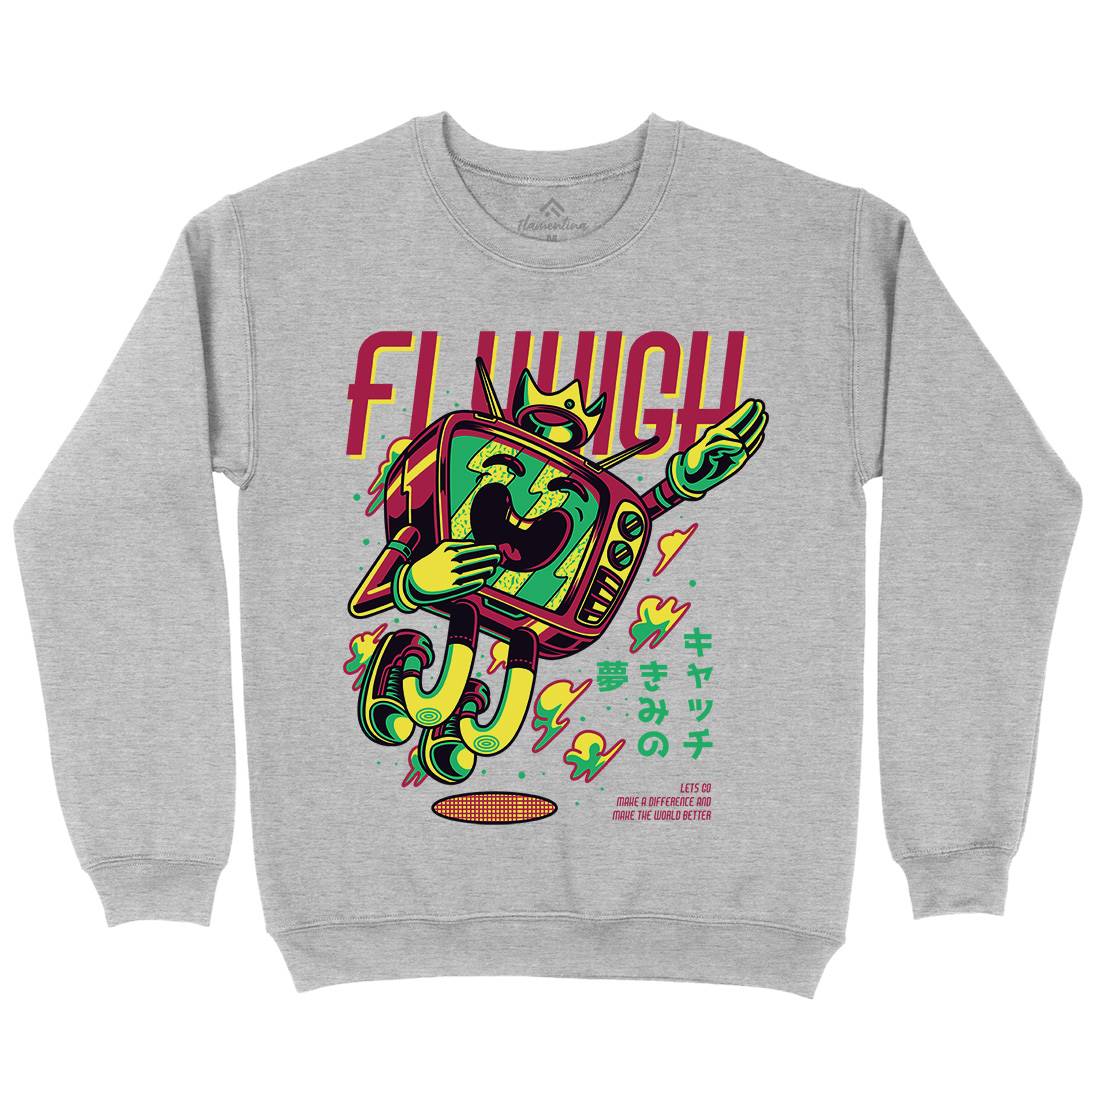 Fly High Kids Crew Neck Sweatshirt Media D778